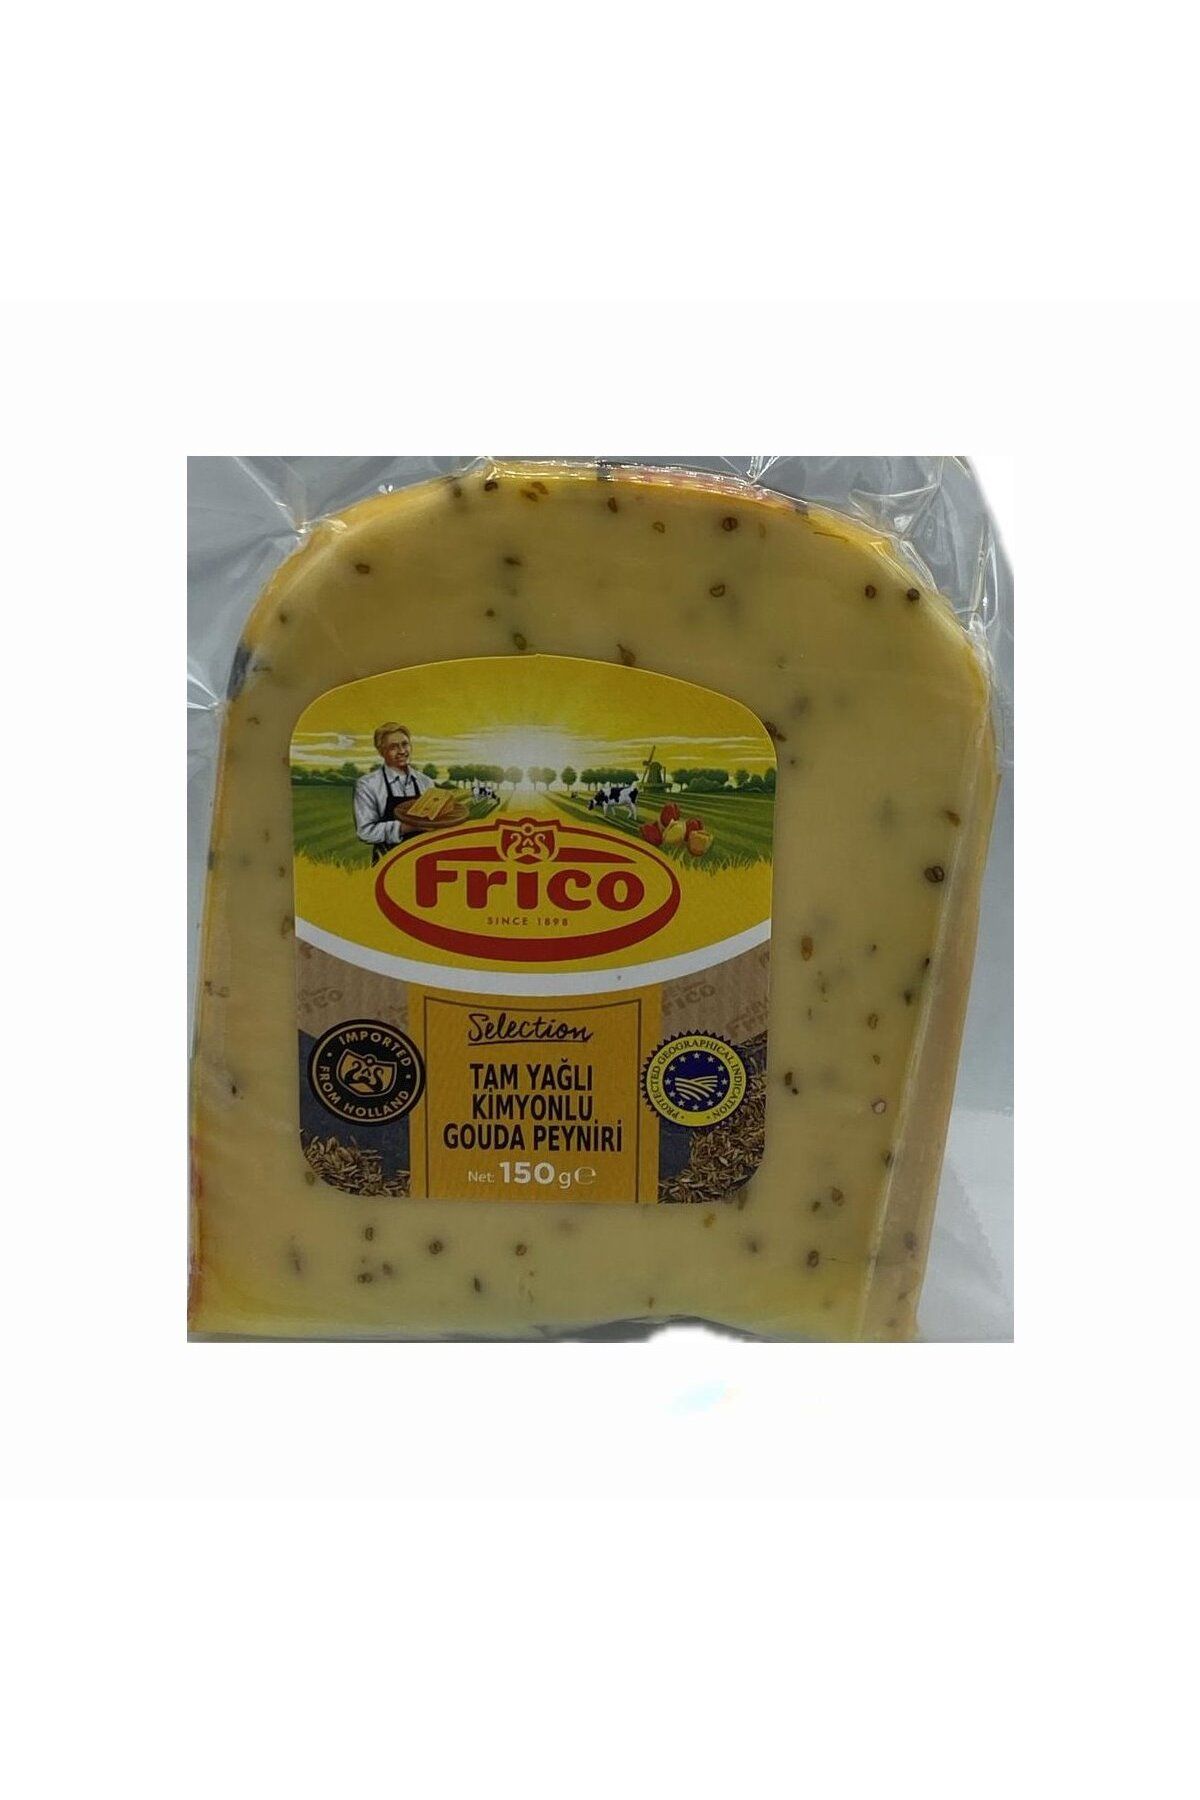 Frico Gouda Cumin Cheese Kimyonlu Gouda Peyniri Ortalama 150 Gr.